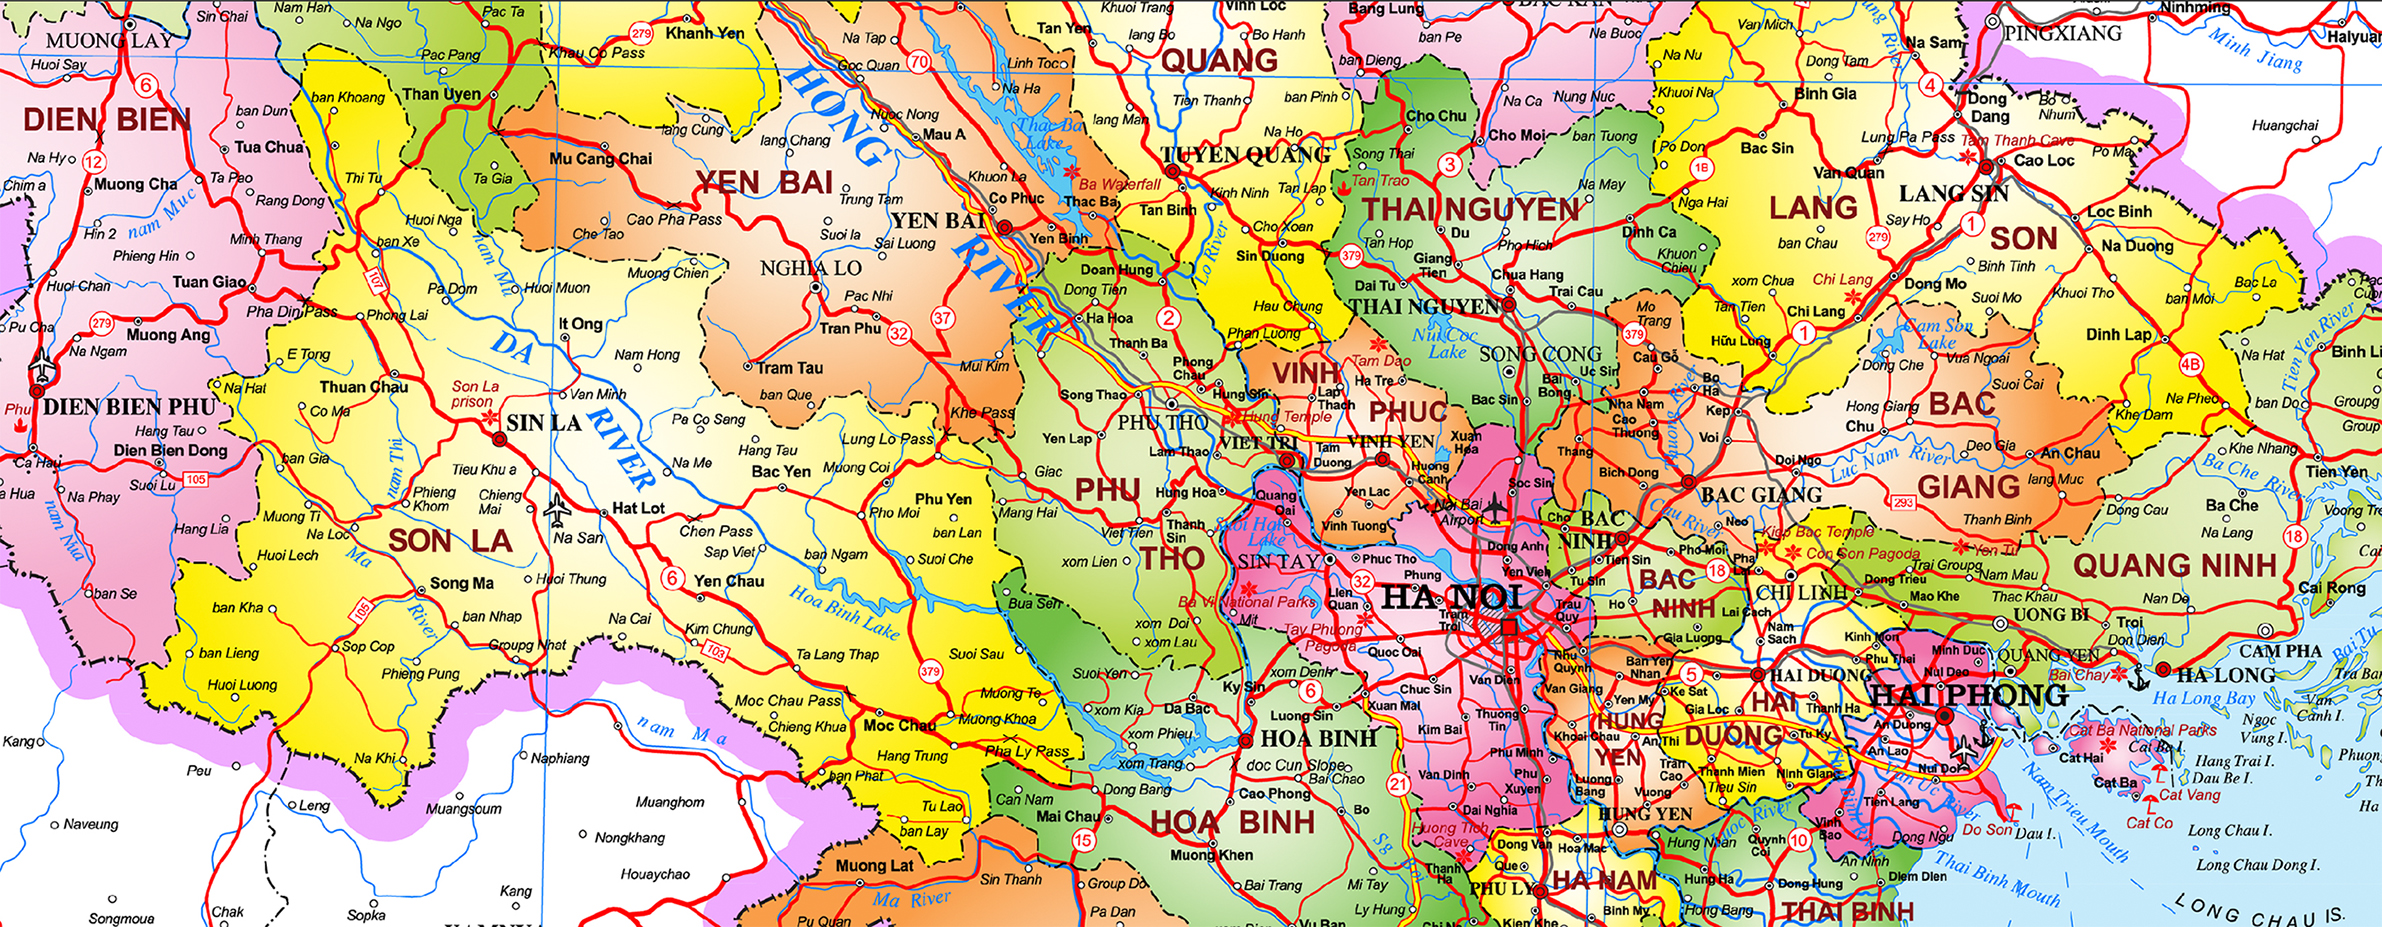 Hành chính Việt Nam phần đất liền tiếng anh khổ A0 (84x120cm)